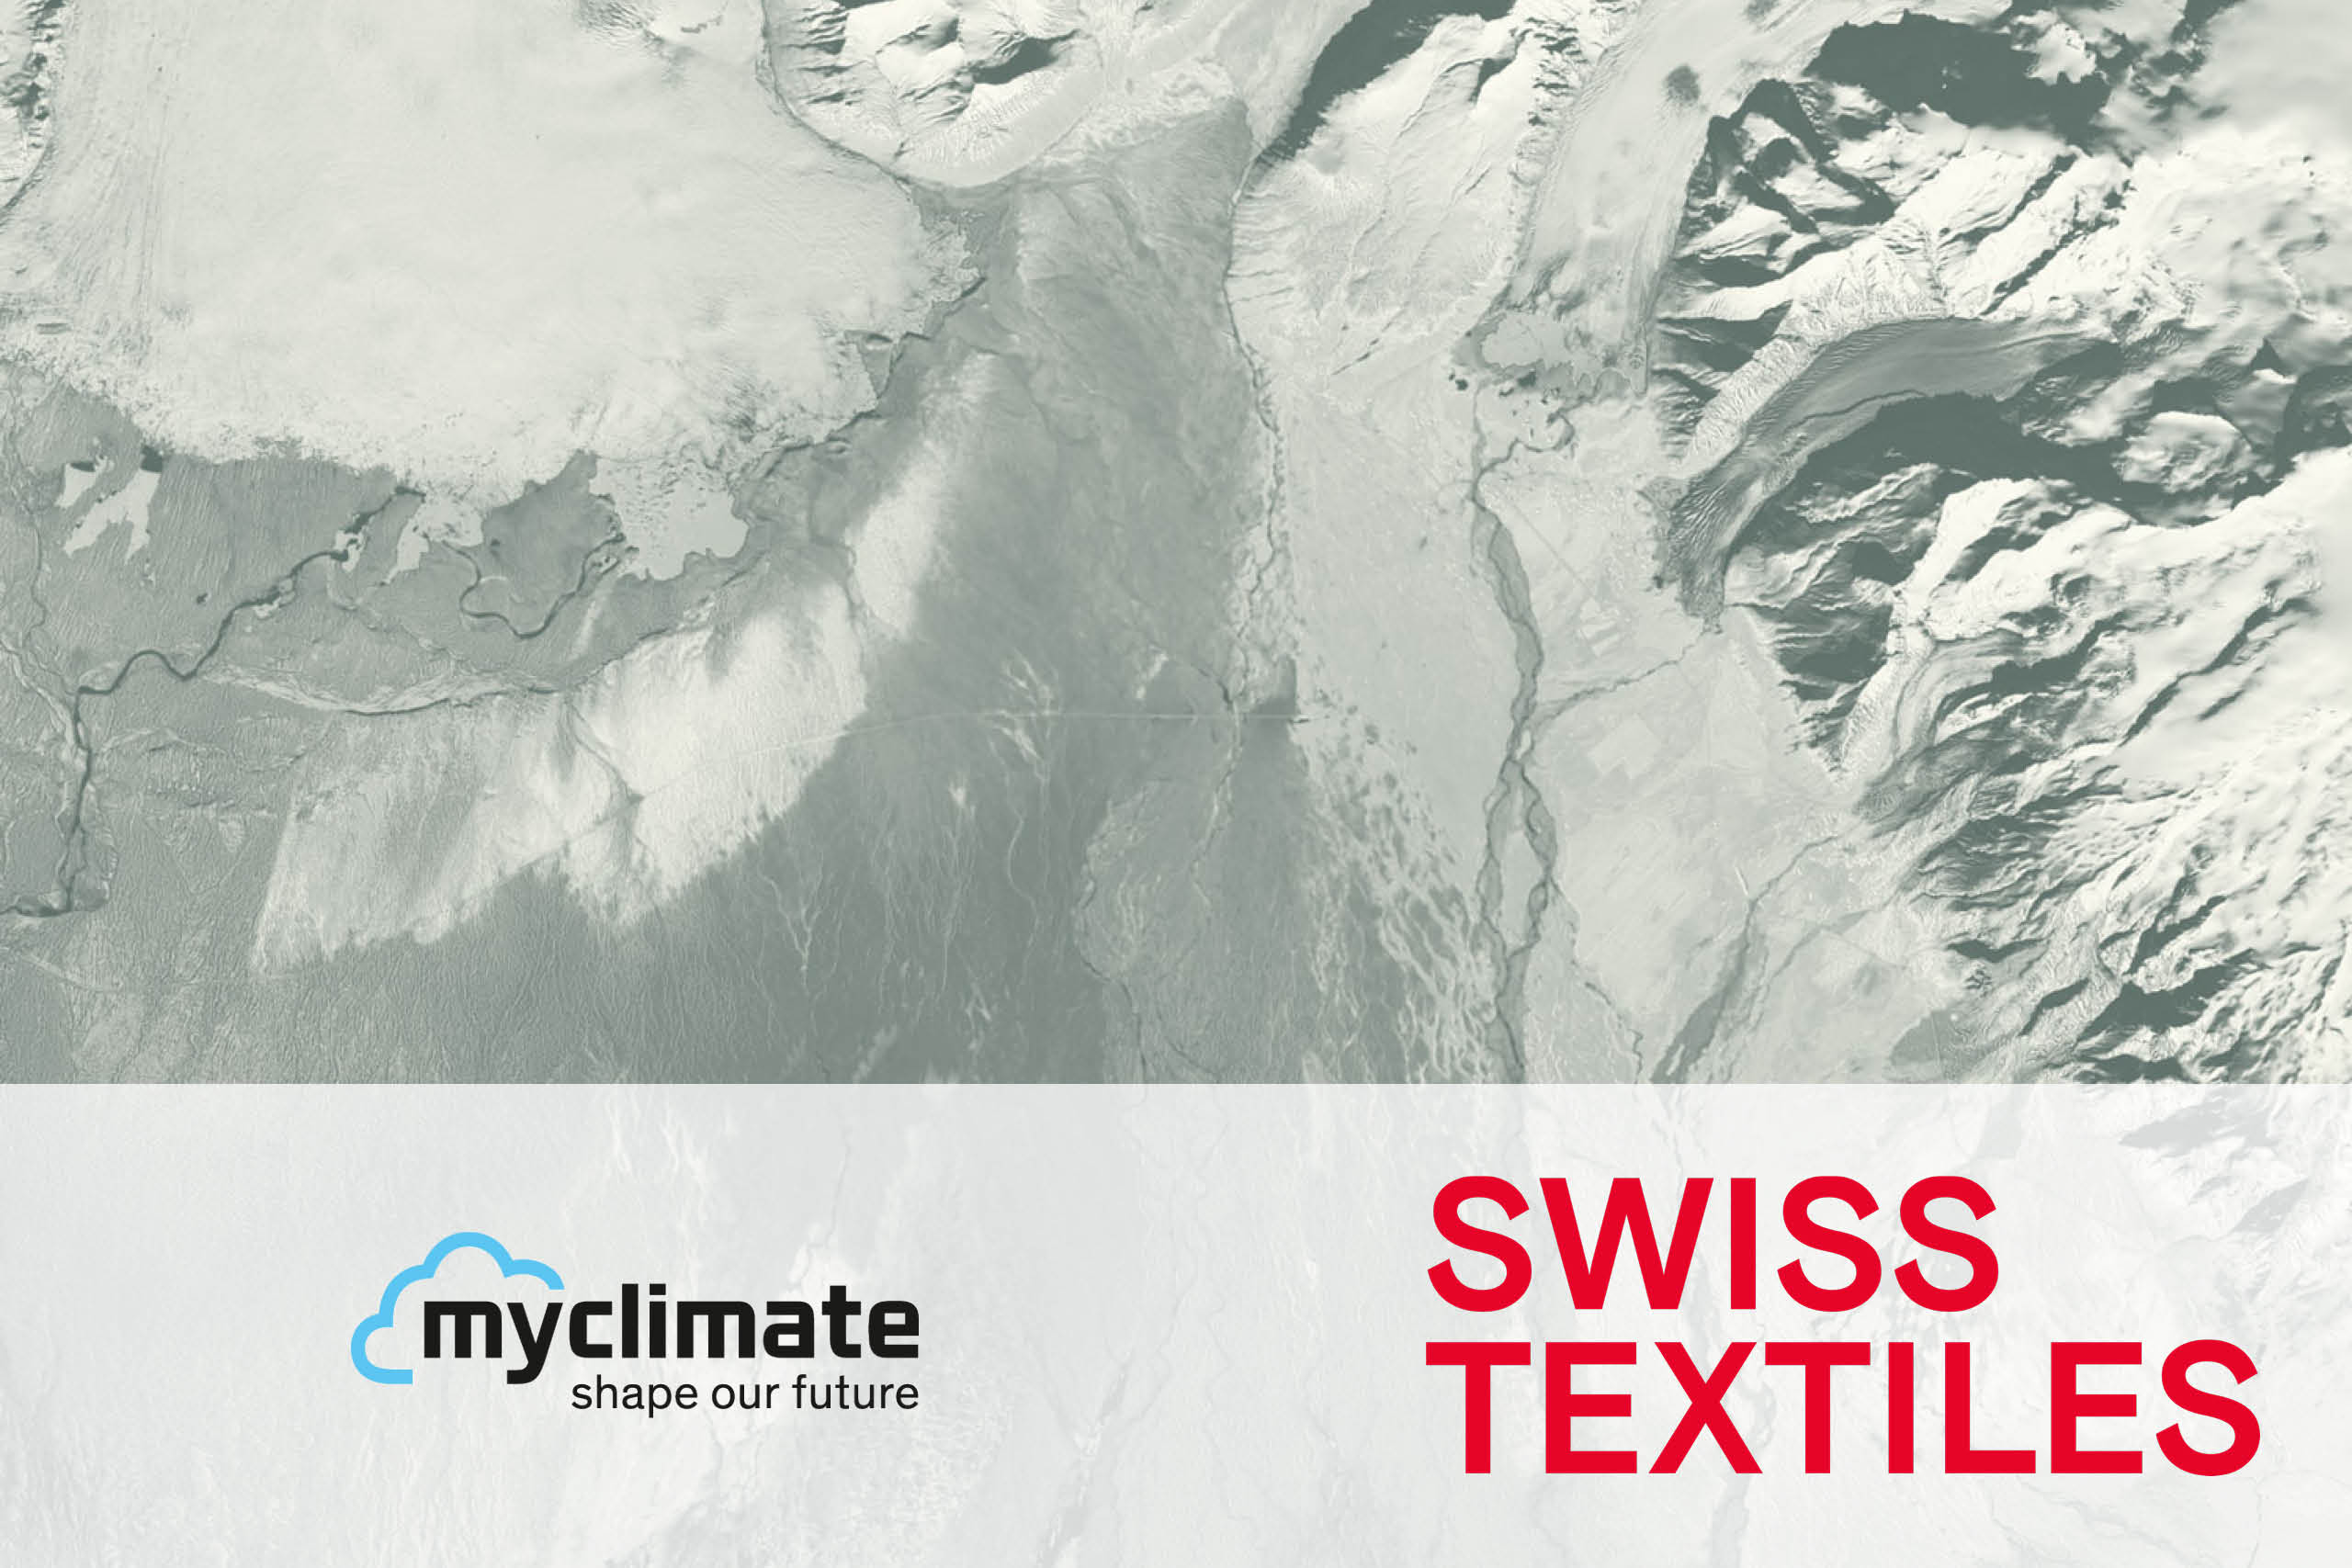 Supportangebot von Swiss Textiles und myclimate zu Ziel 1: Klima von STS 2030